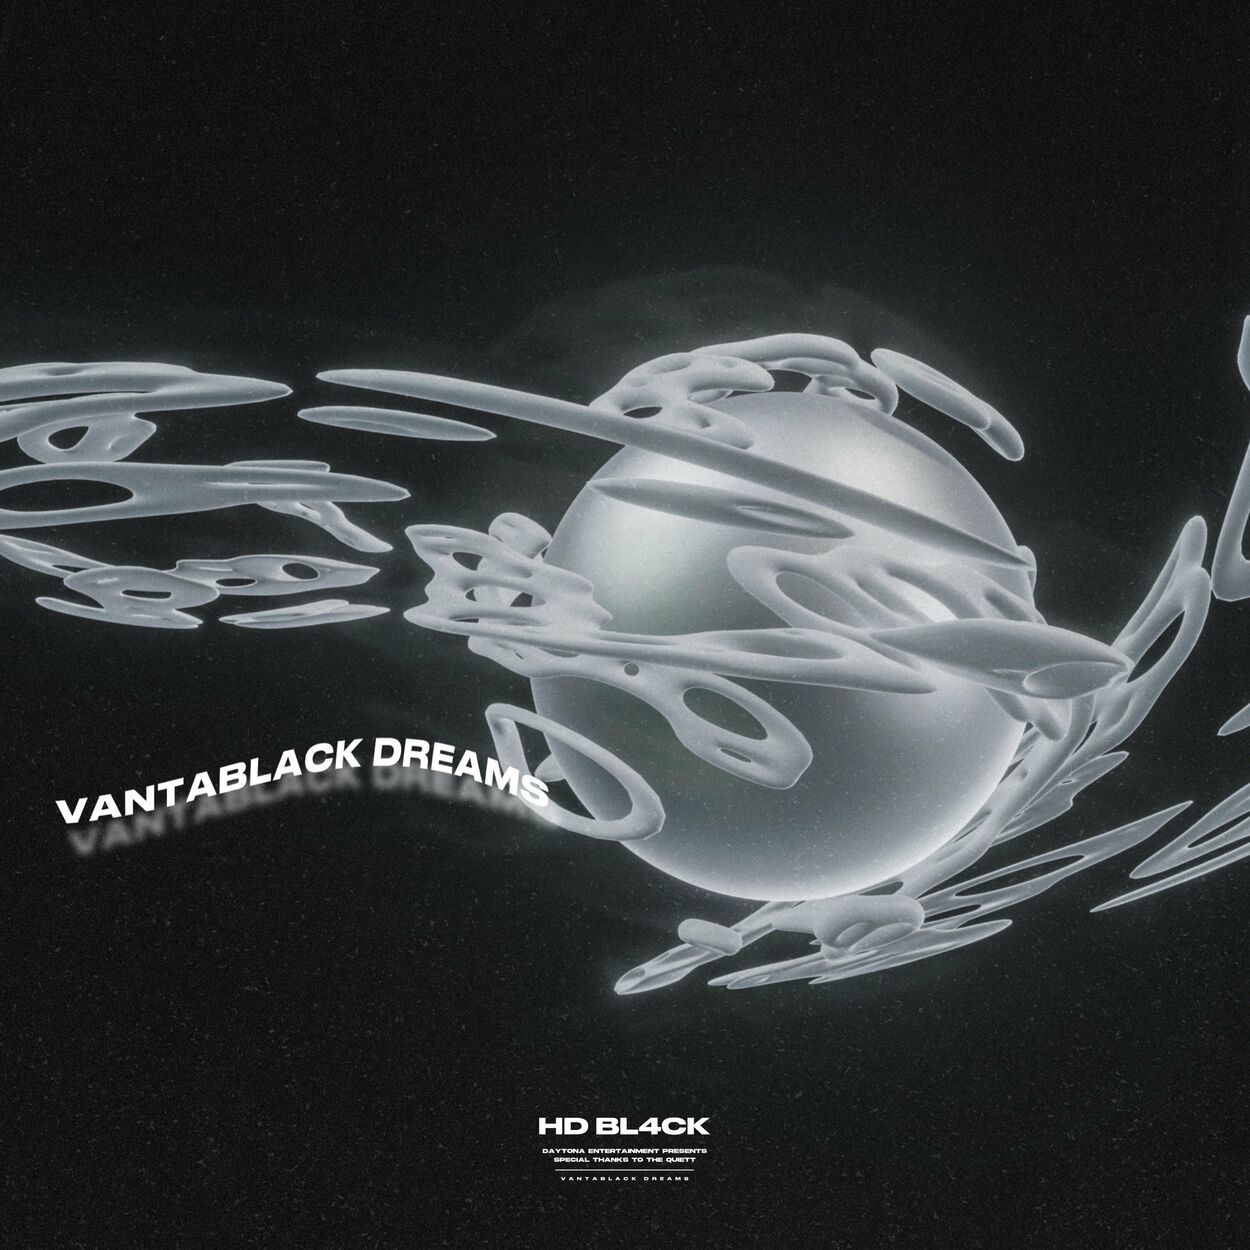 HD BL4CK – Vantablack Dreams